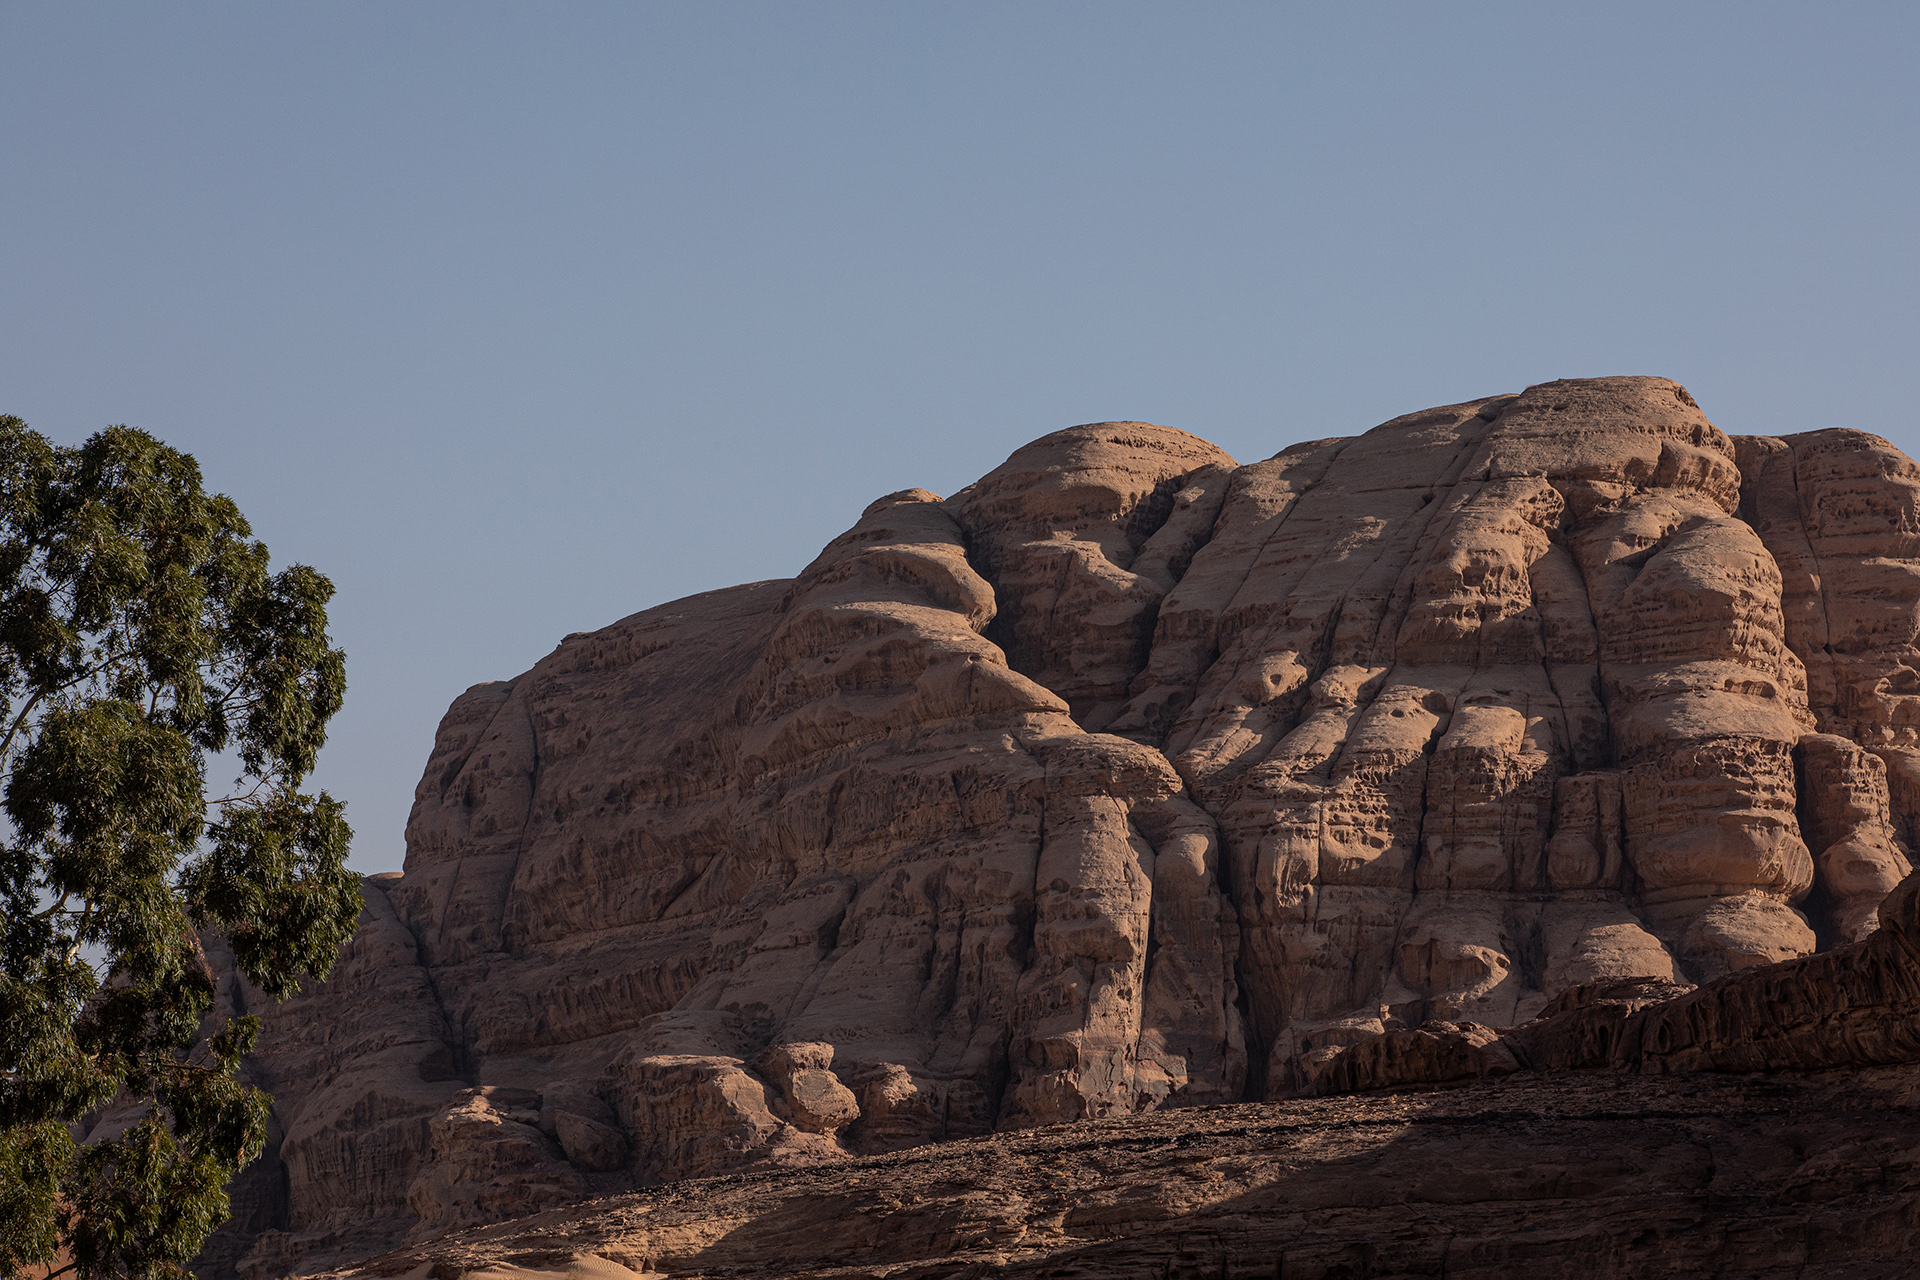 Wadi Rum (6)